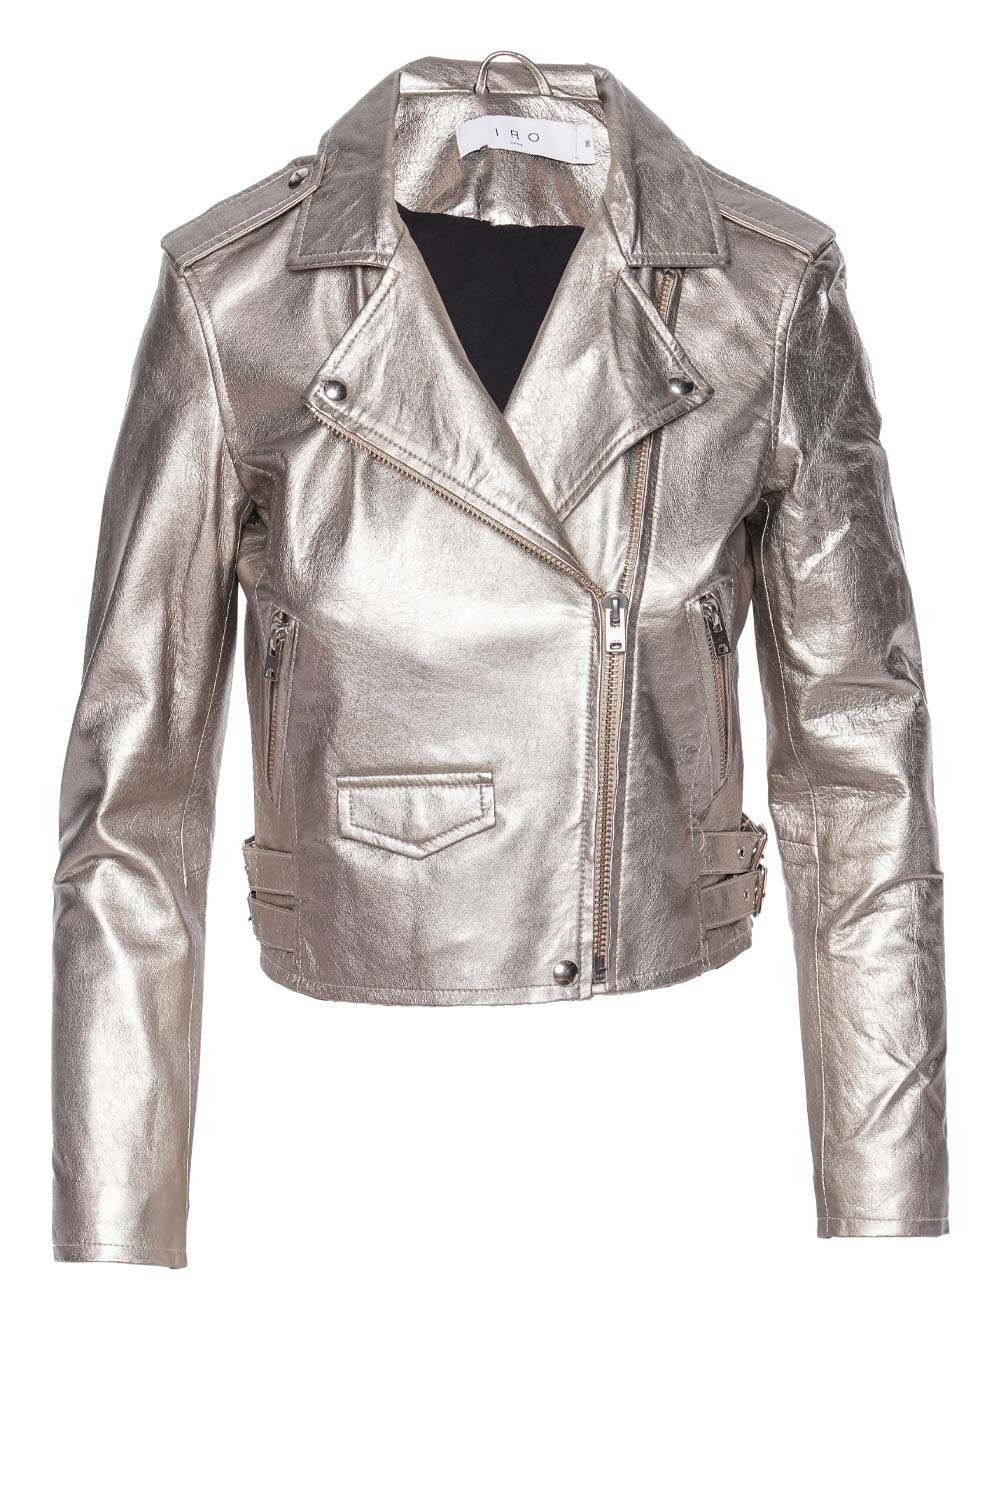 IRO Ashville Metallic Leather Cropped Jacket